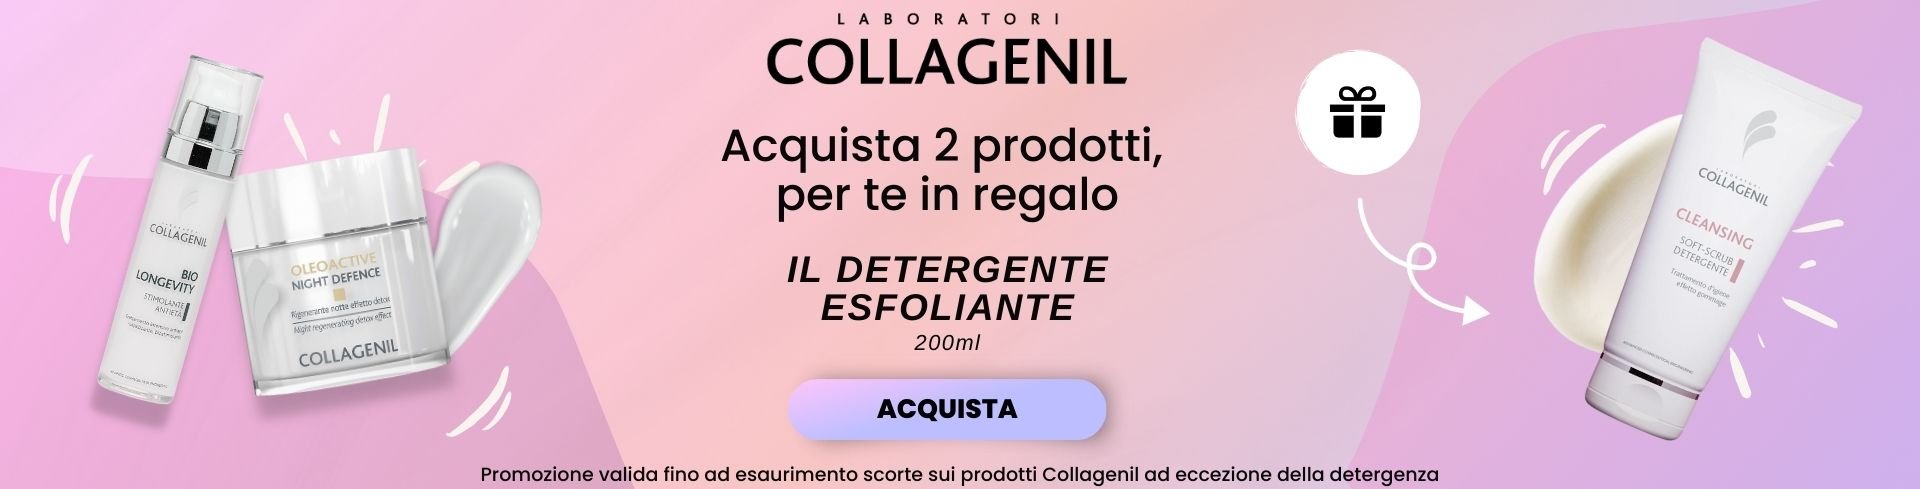 collagenil detergente